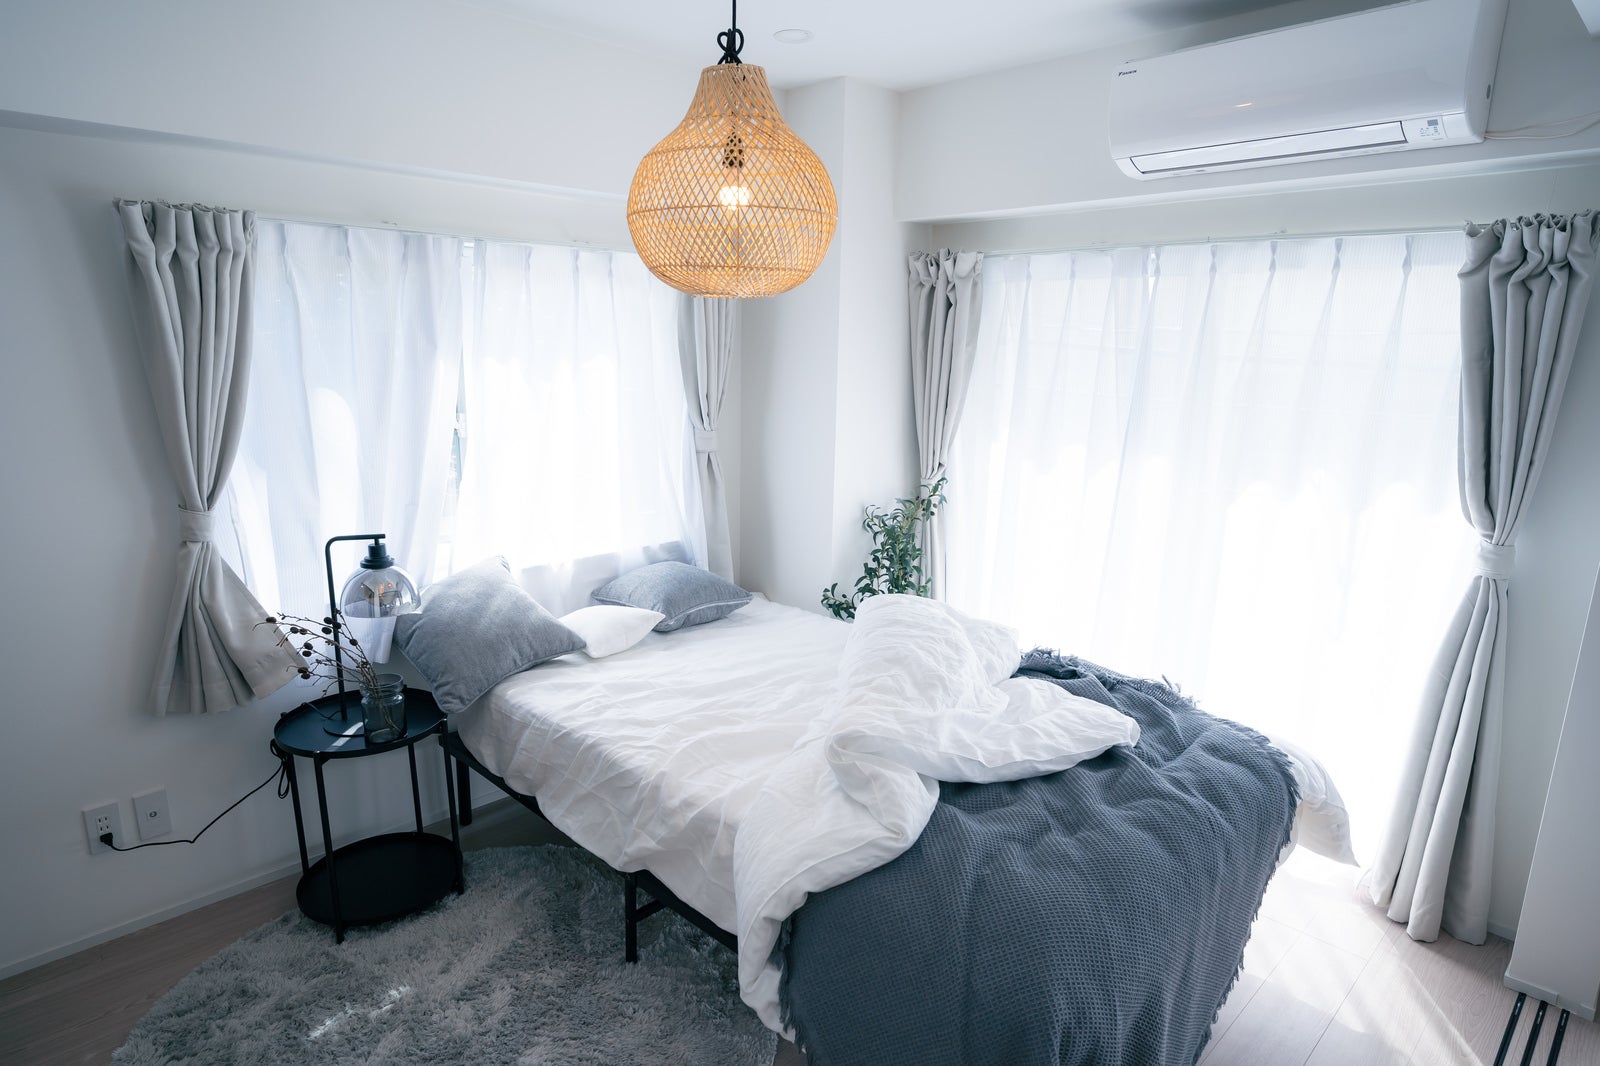 「自然光がたっぷり入る寝室の様子」の写真